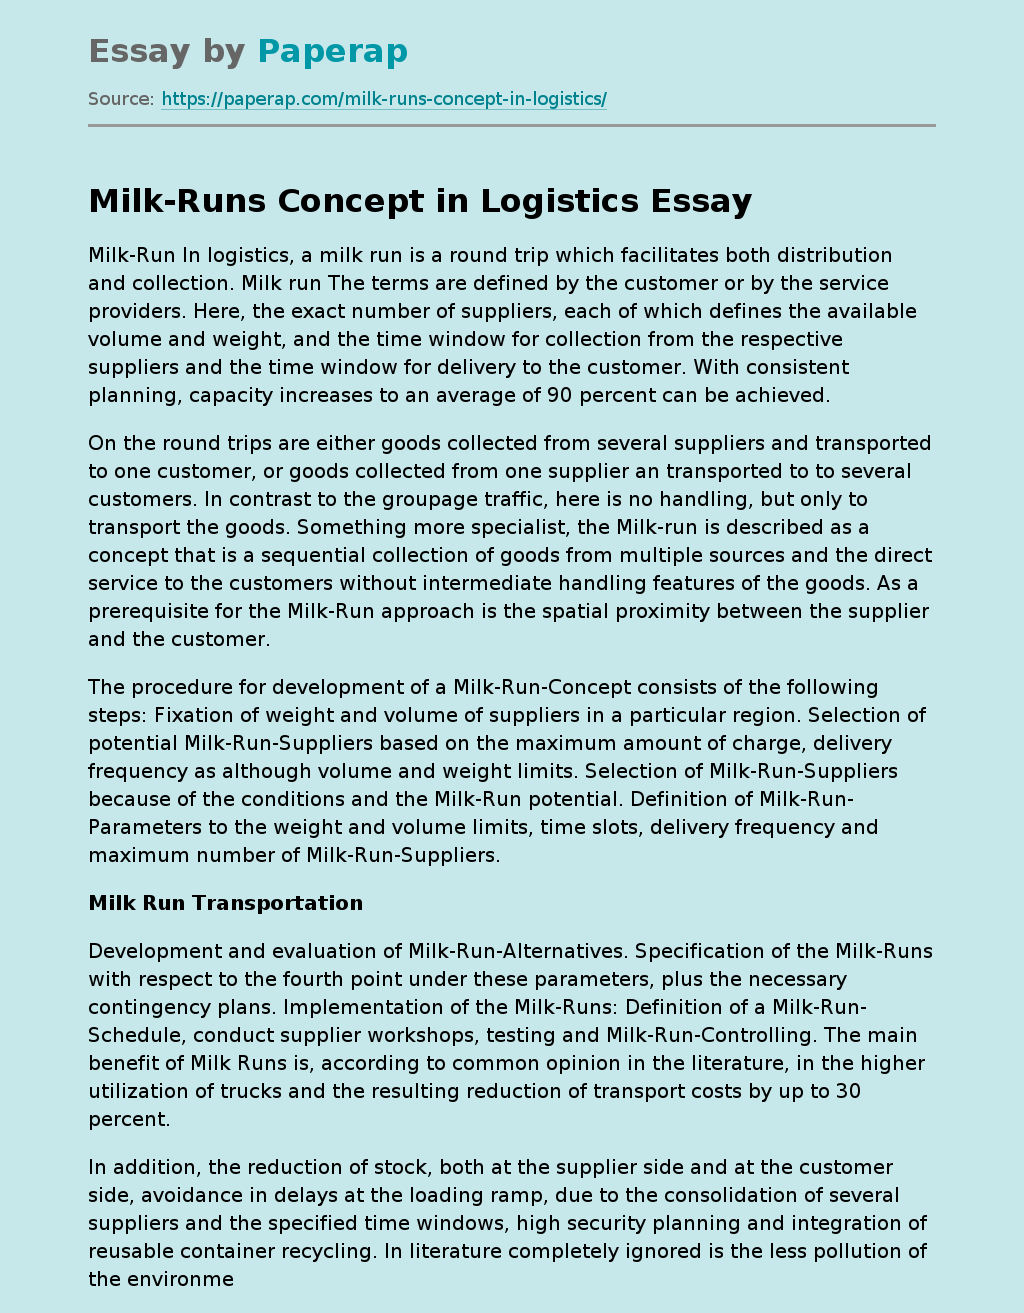 Milk-Runs Concept in Logistics